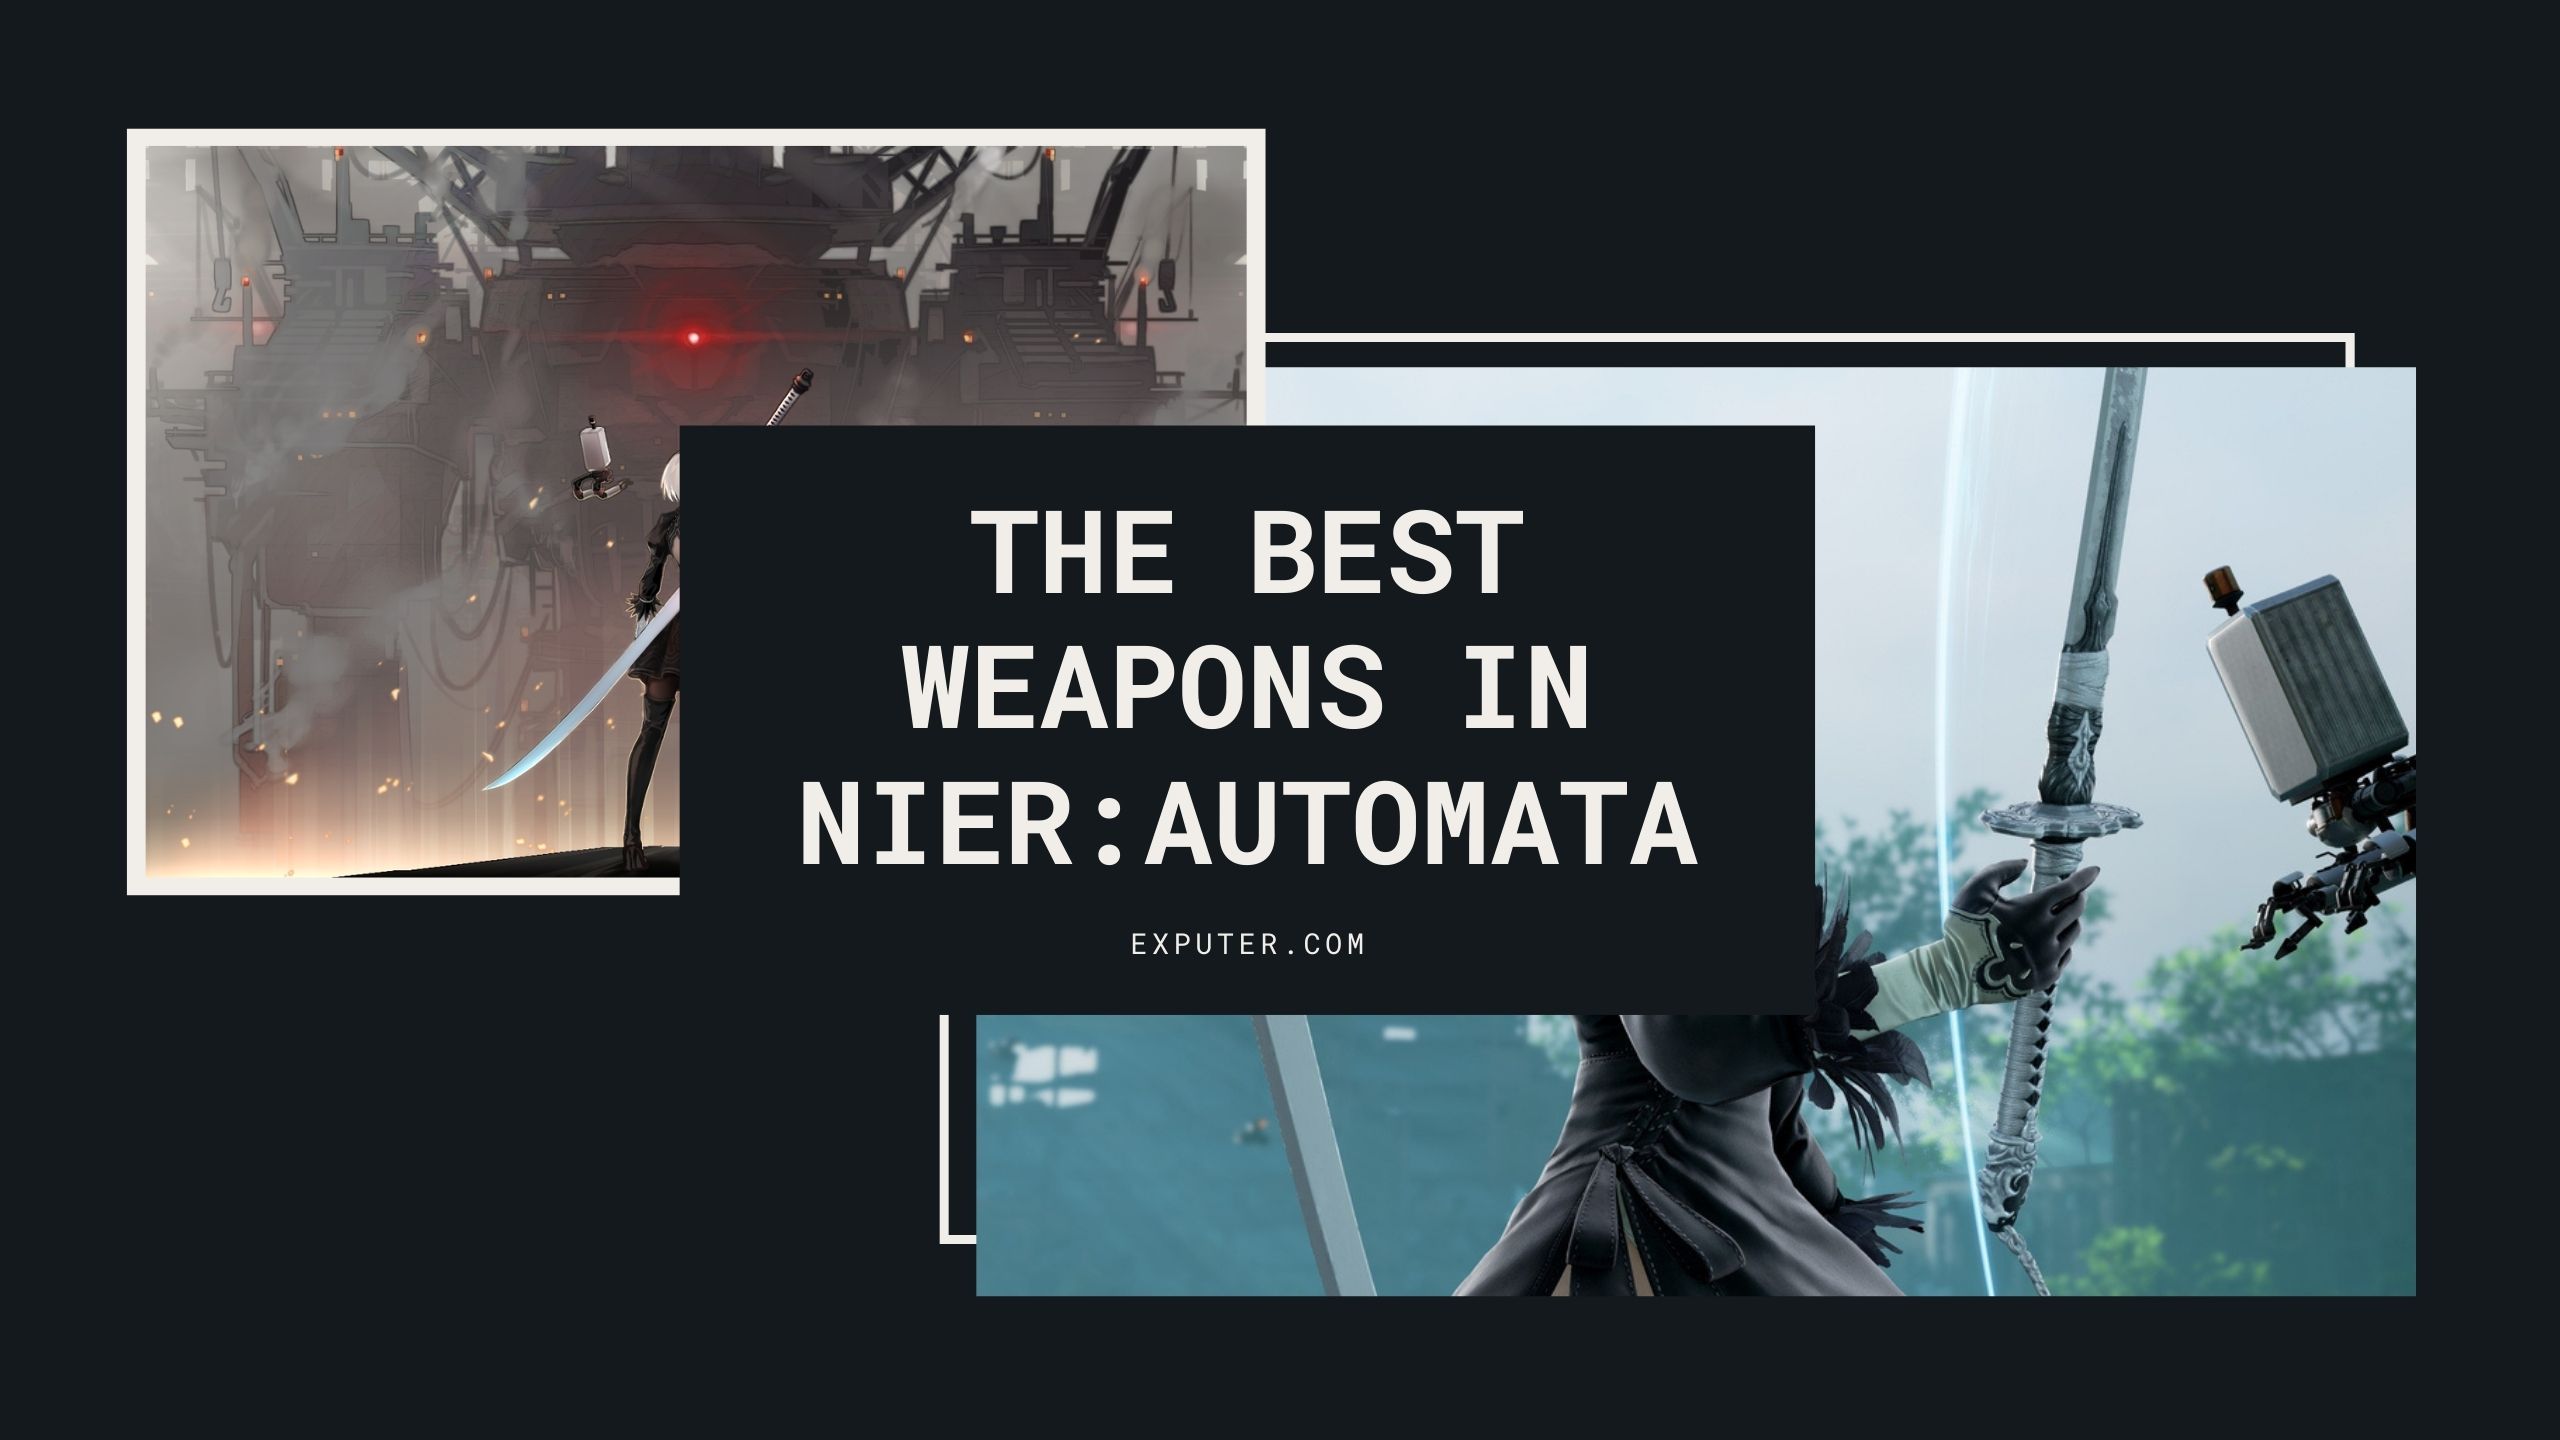 probleem speelplaats Scheur Nier Automata Best Weapons: 17 Weapons Ranked - eXputer.com